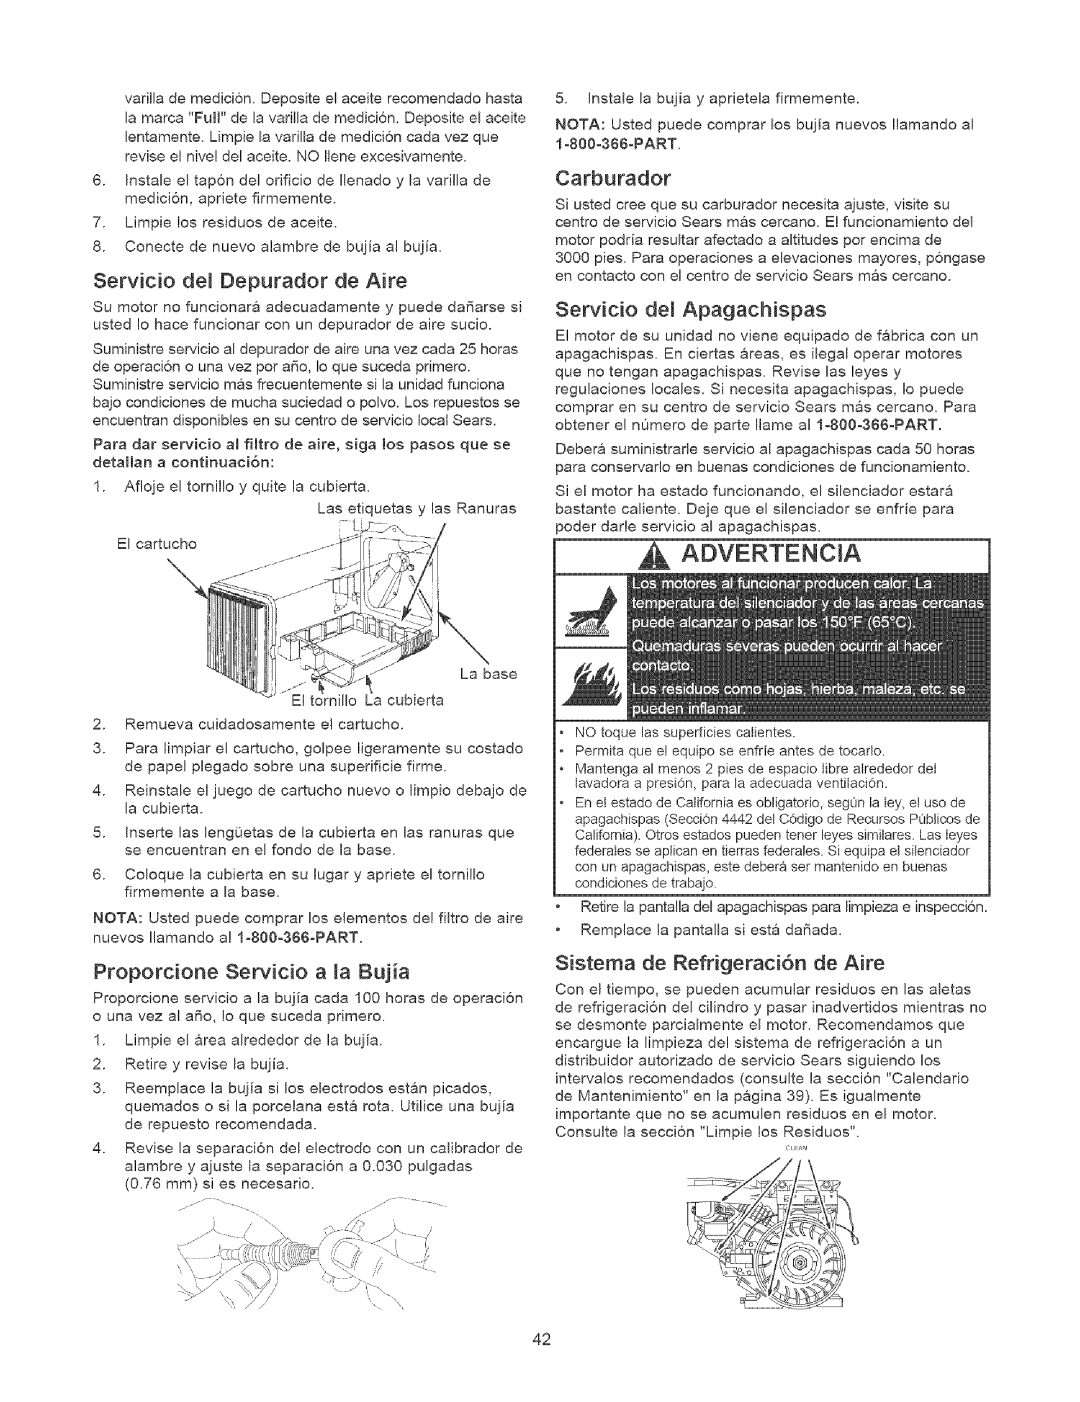 Craftsman 580.75231 owner manual Advertencia, Servicio del Depurador de Aire, Proporcione Servicio a la Bujia, Carburador 